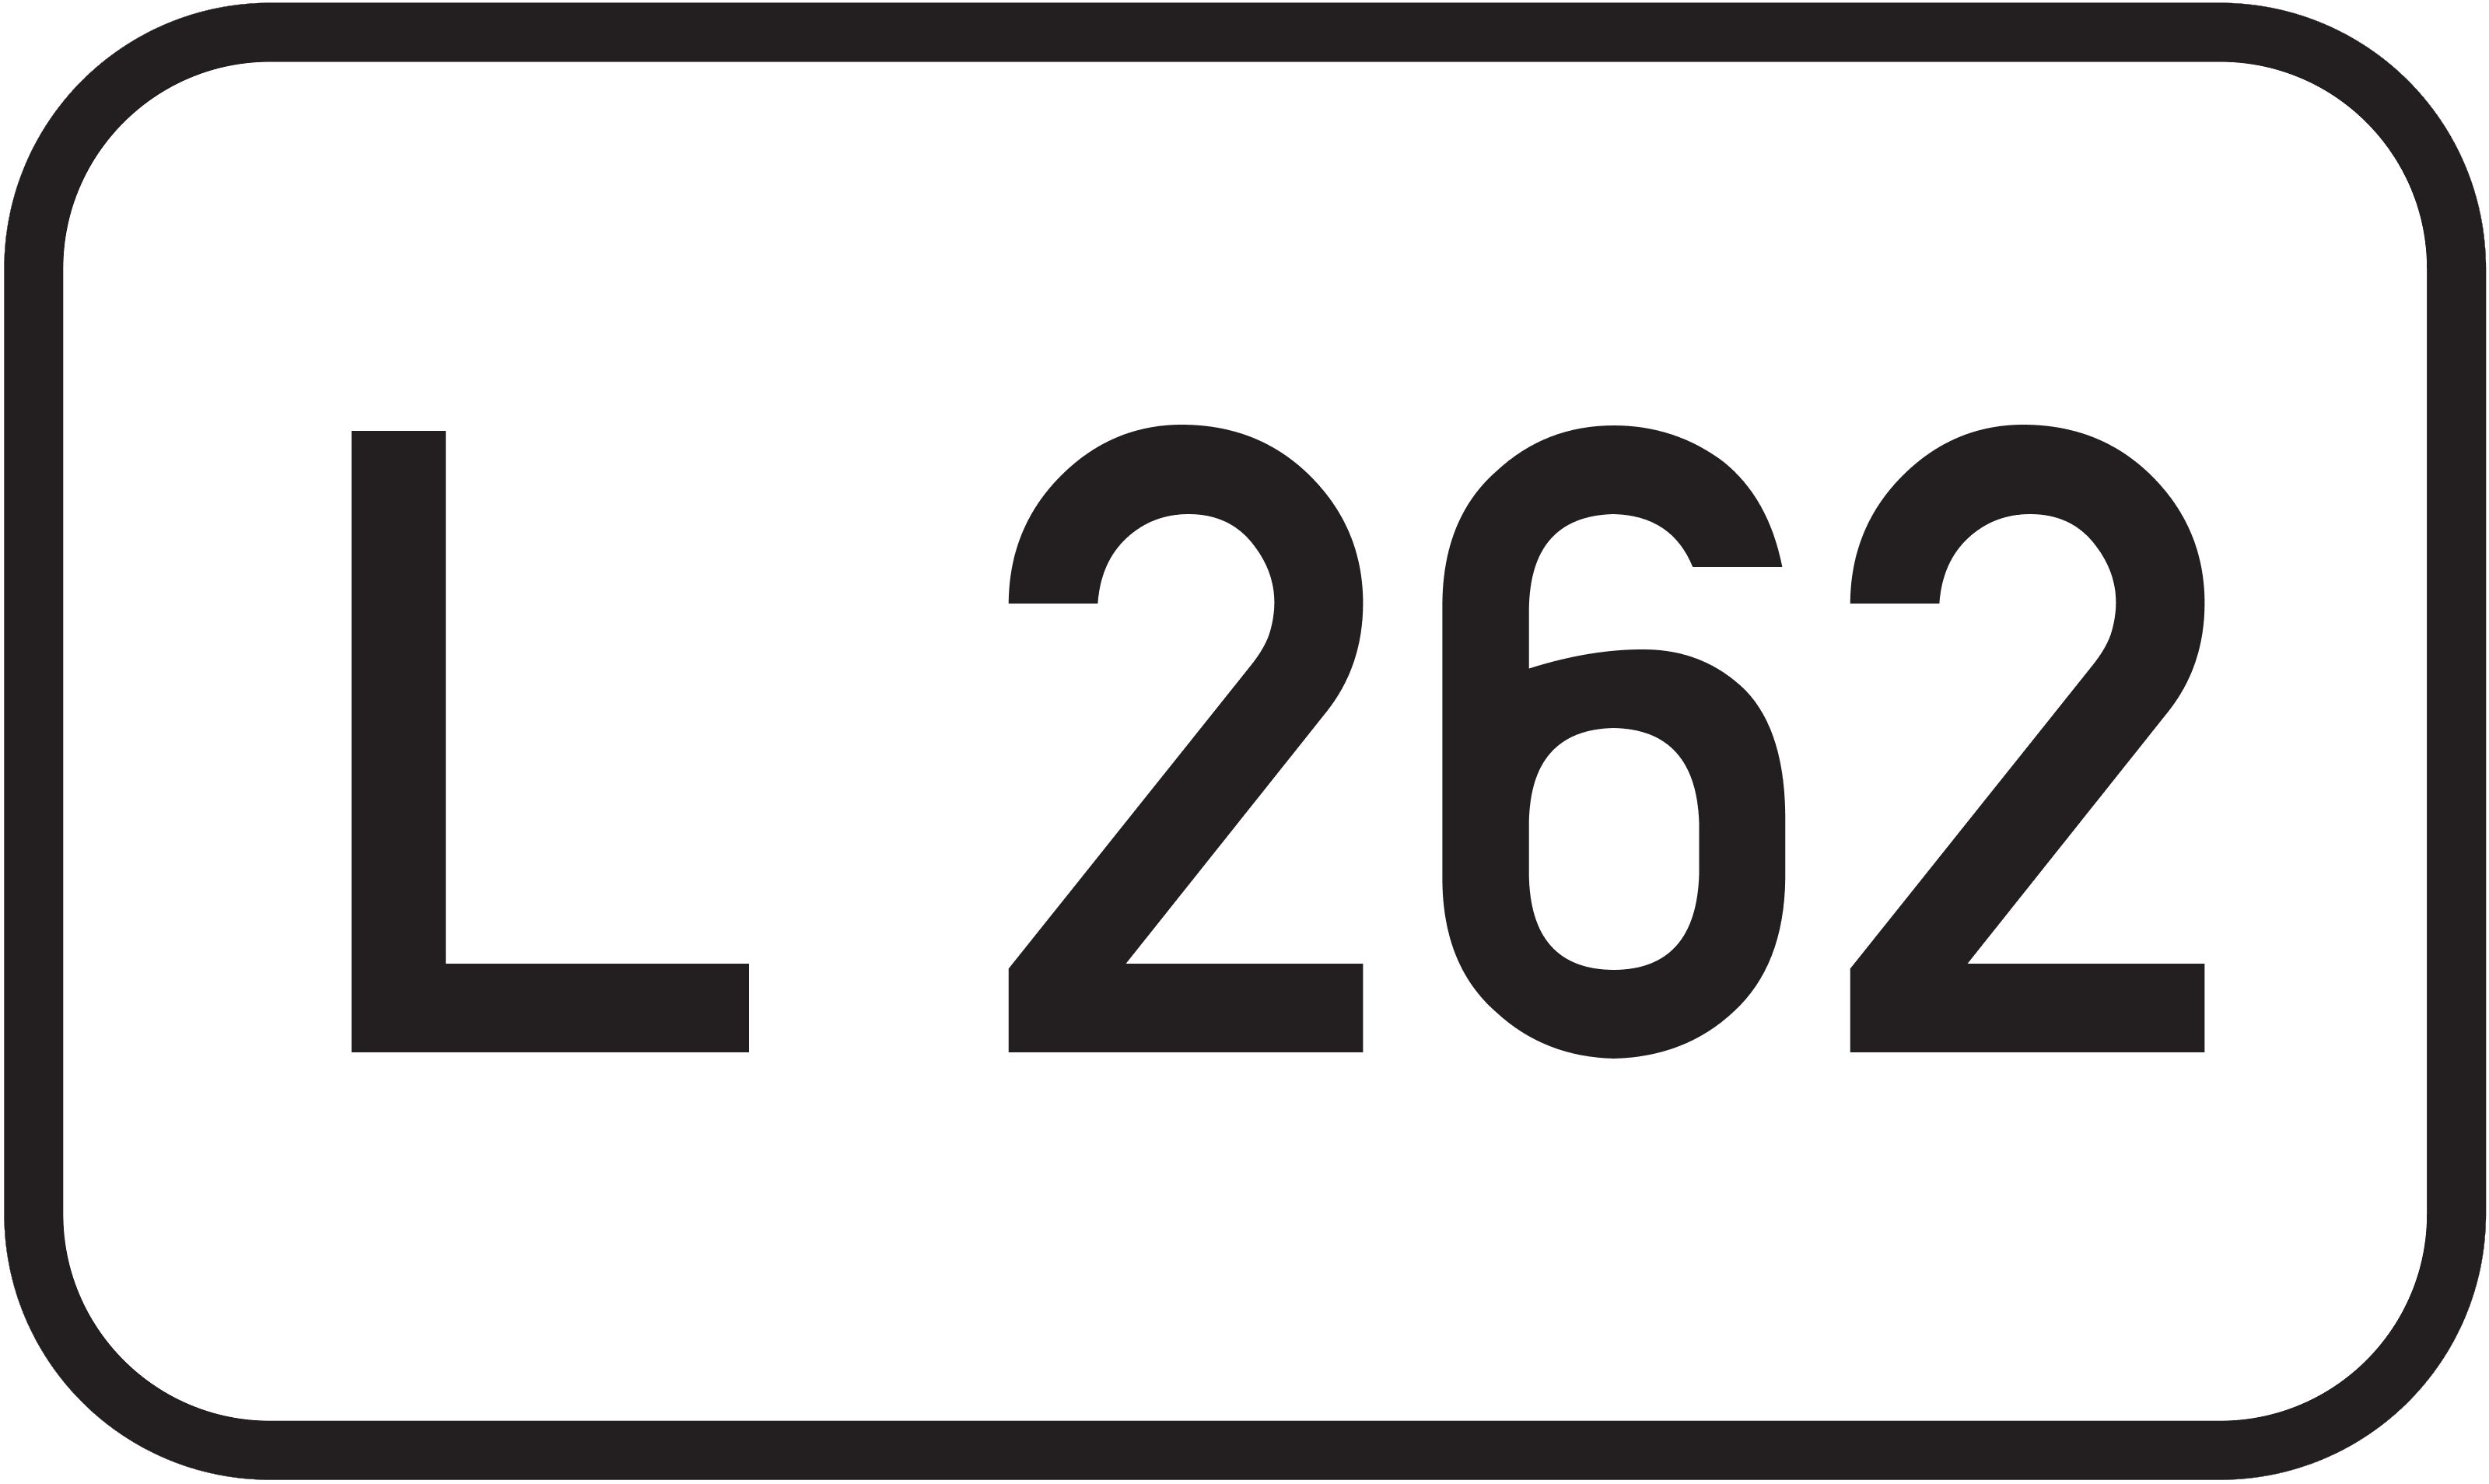 Landesstraße L 262